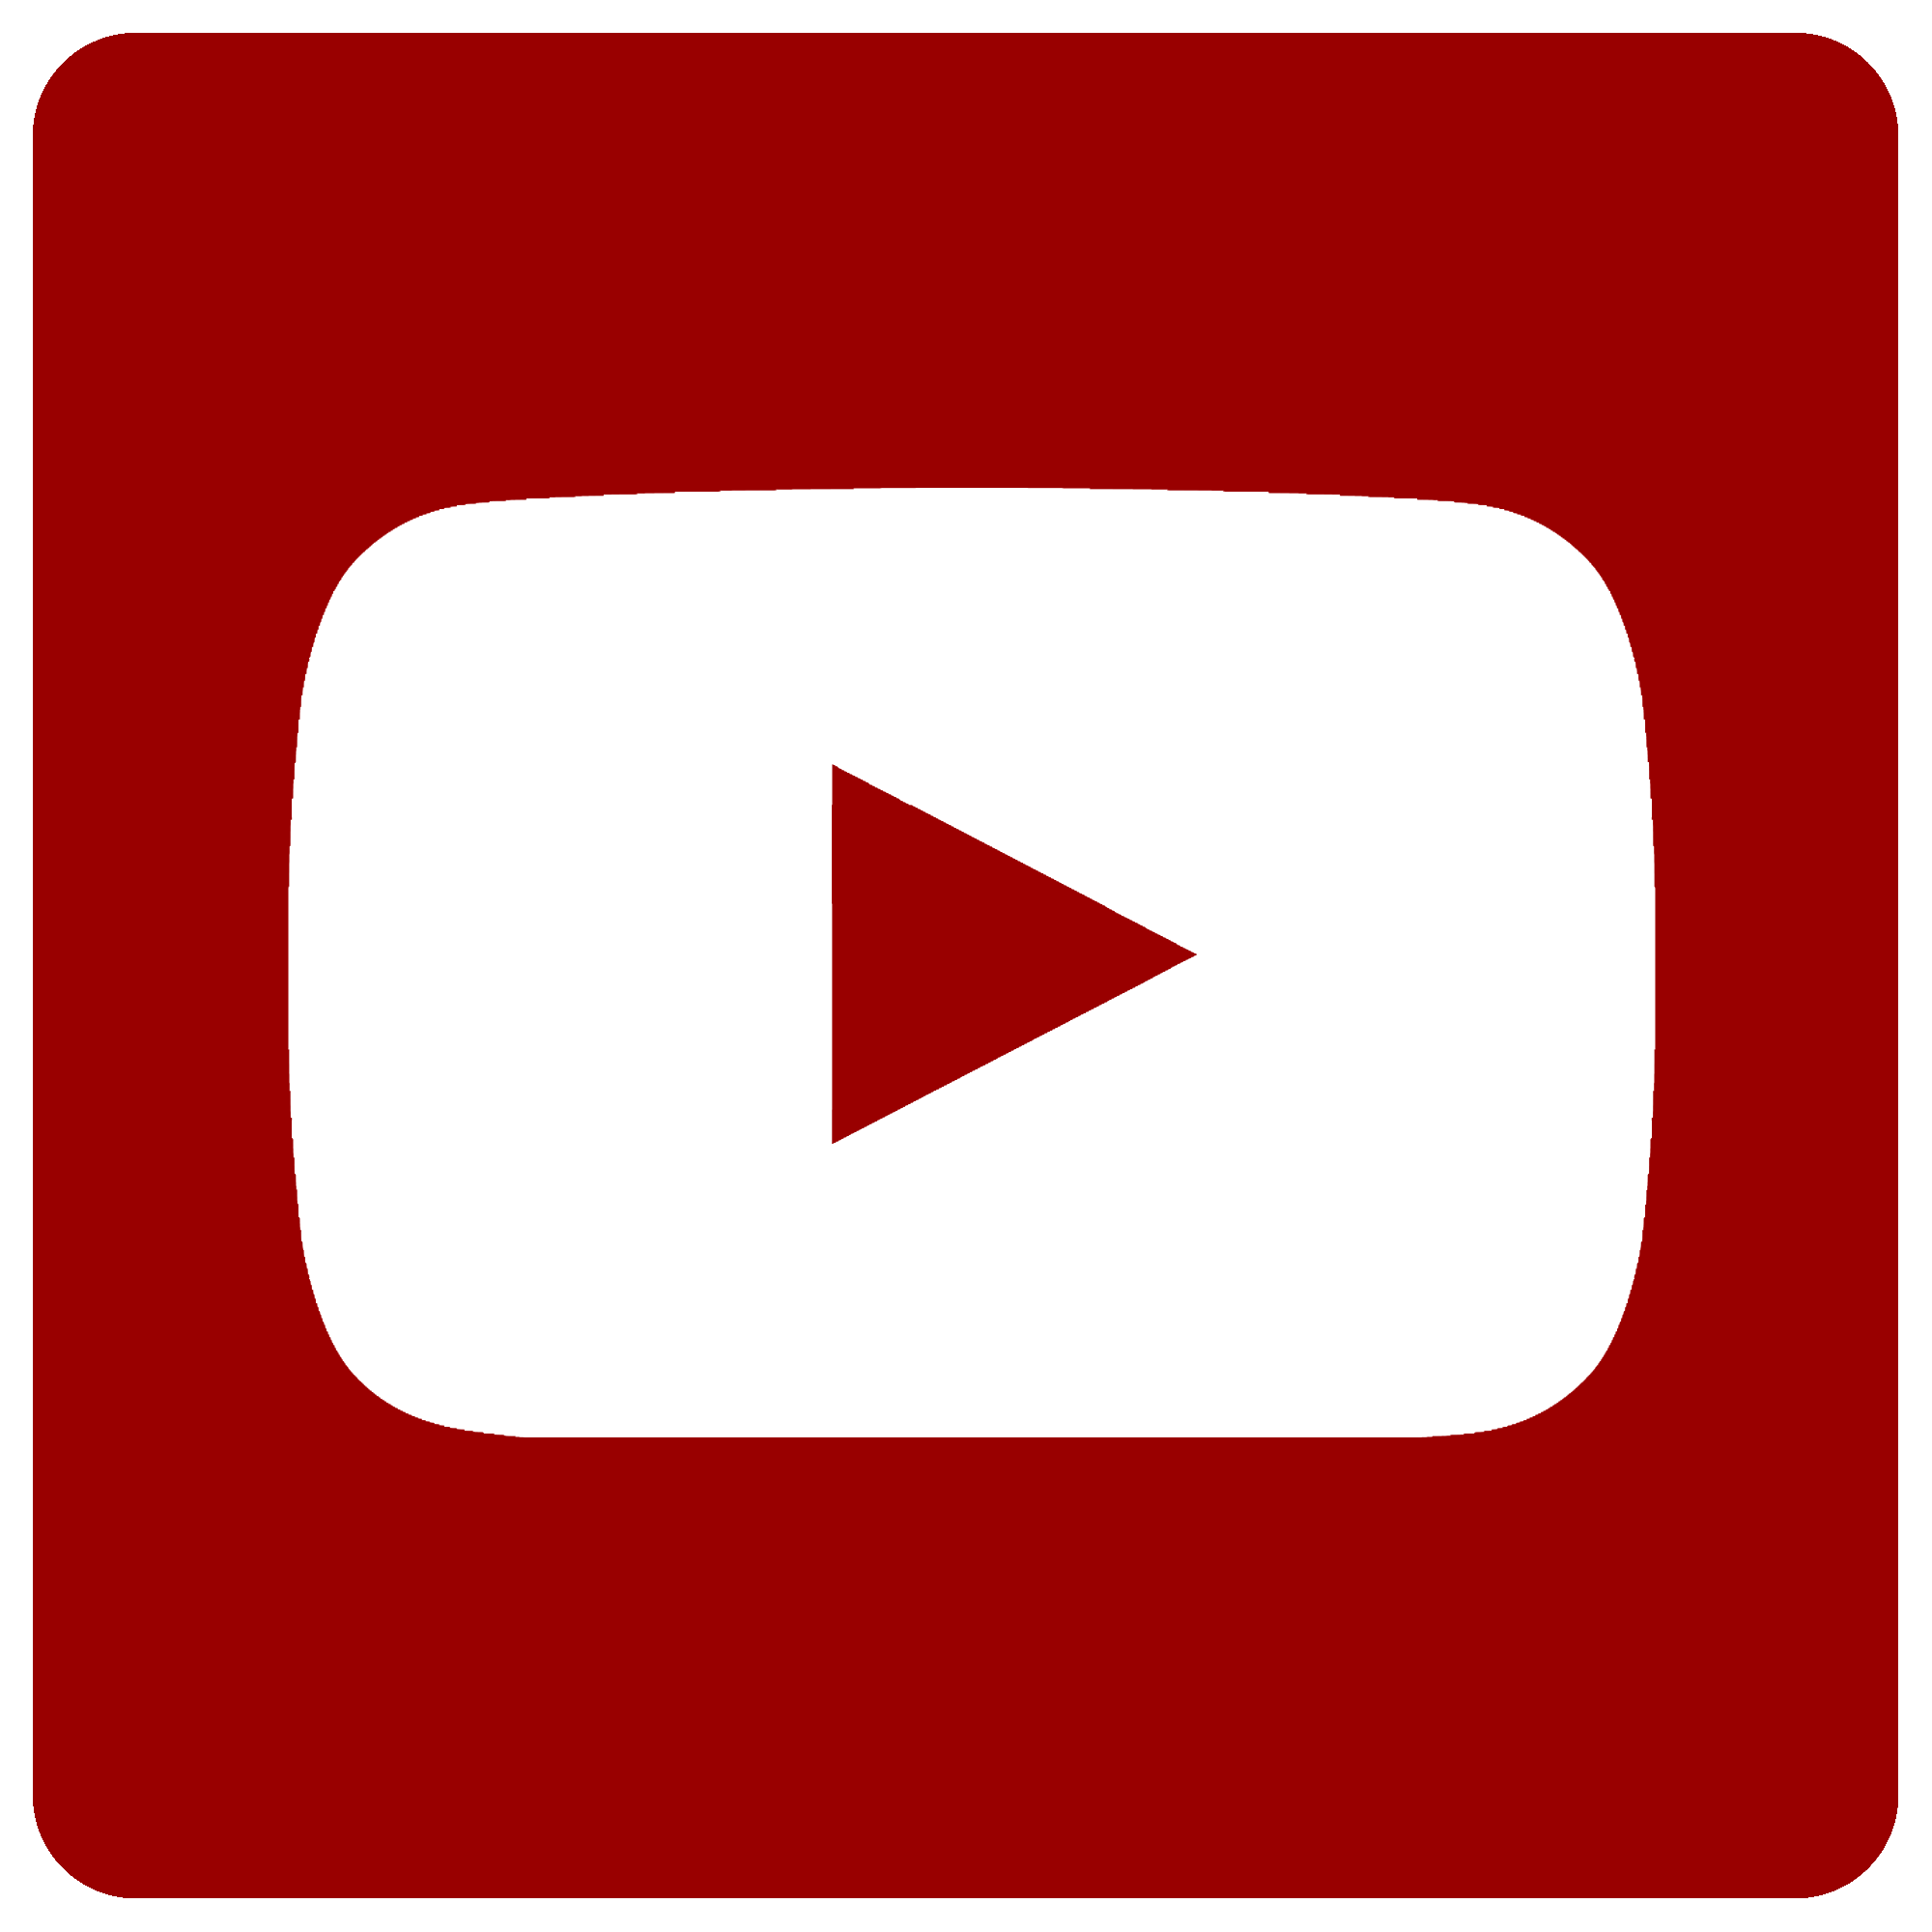 gambar logo youtube Youtube, logo youtube, logo youtube png, logo ...